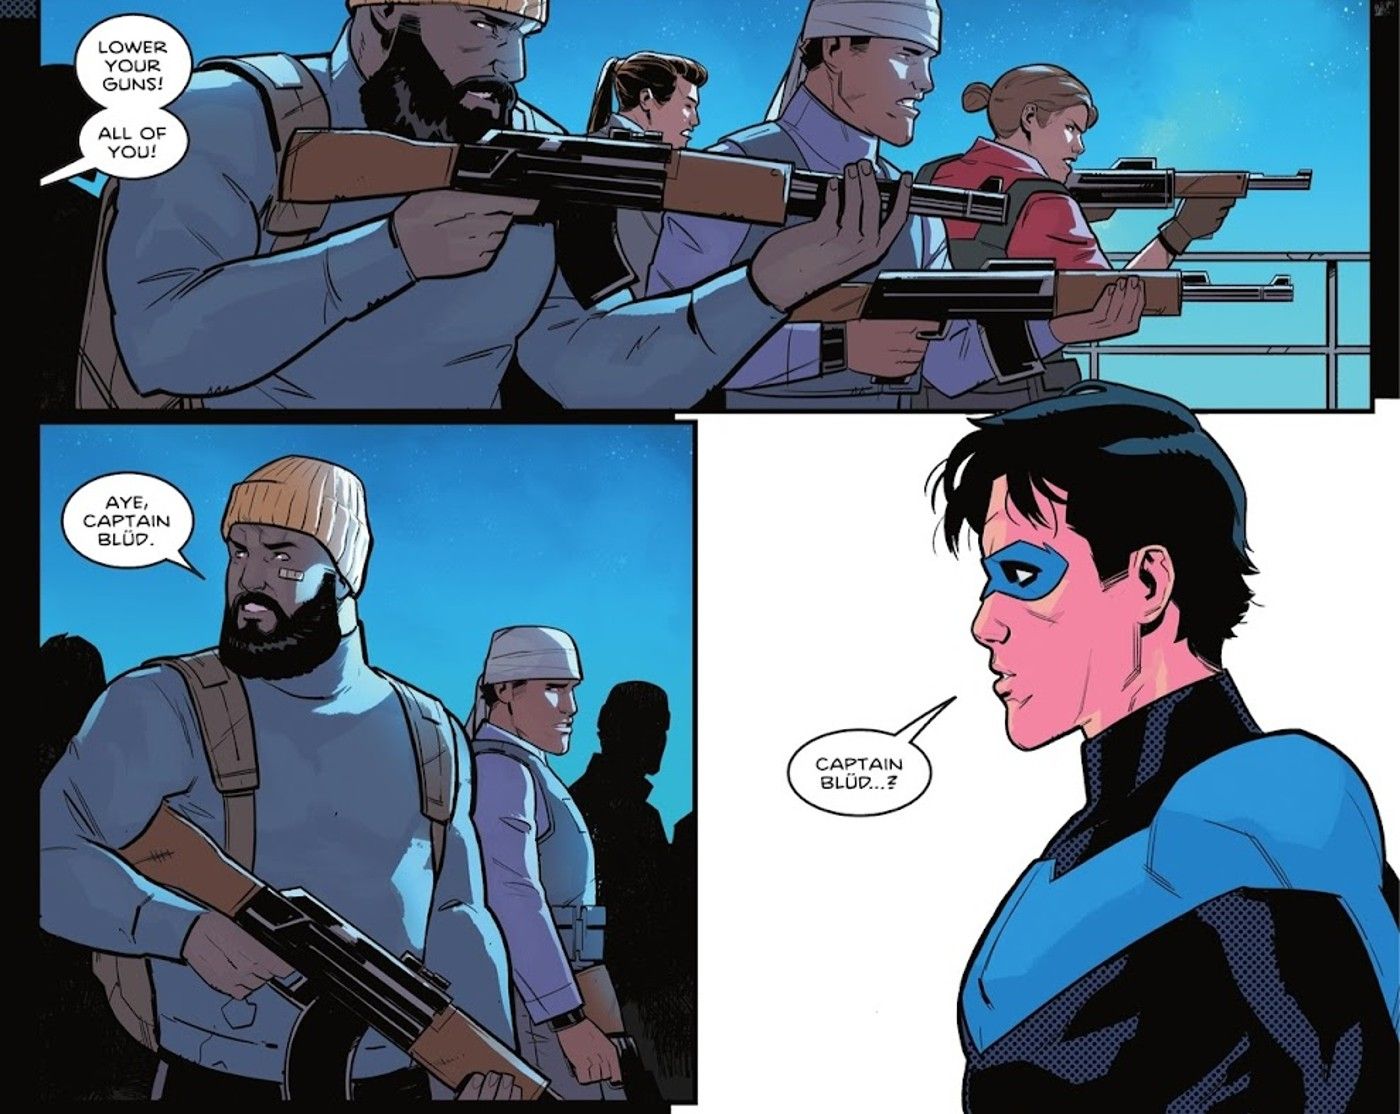 Nightwing trifft Captain Blud und ihre Streitkräfte